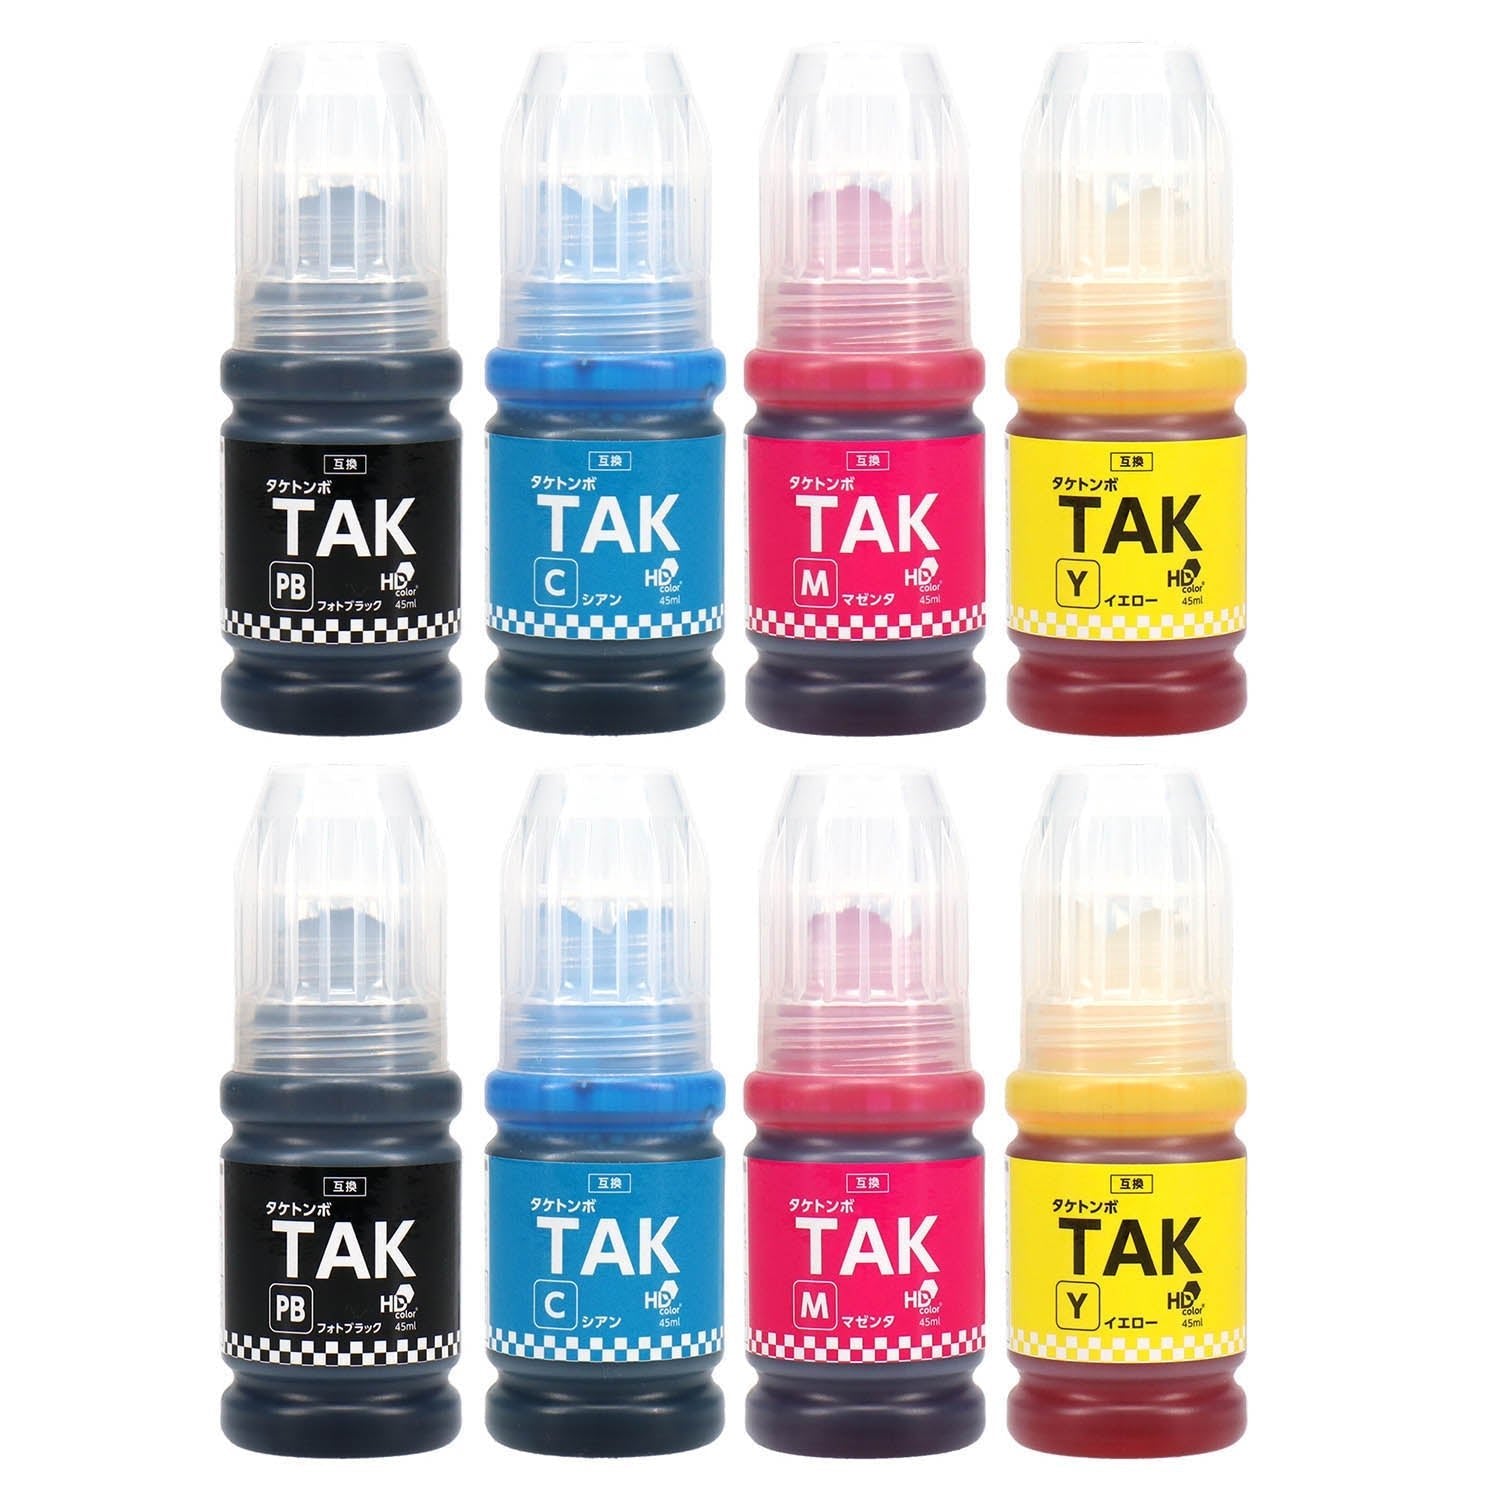 エプソン用 TAK-4CL (タケトンボ) 互換インクボトル 4色セット